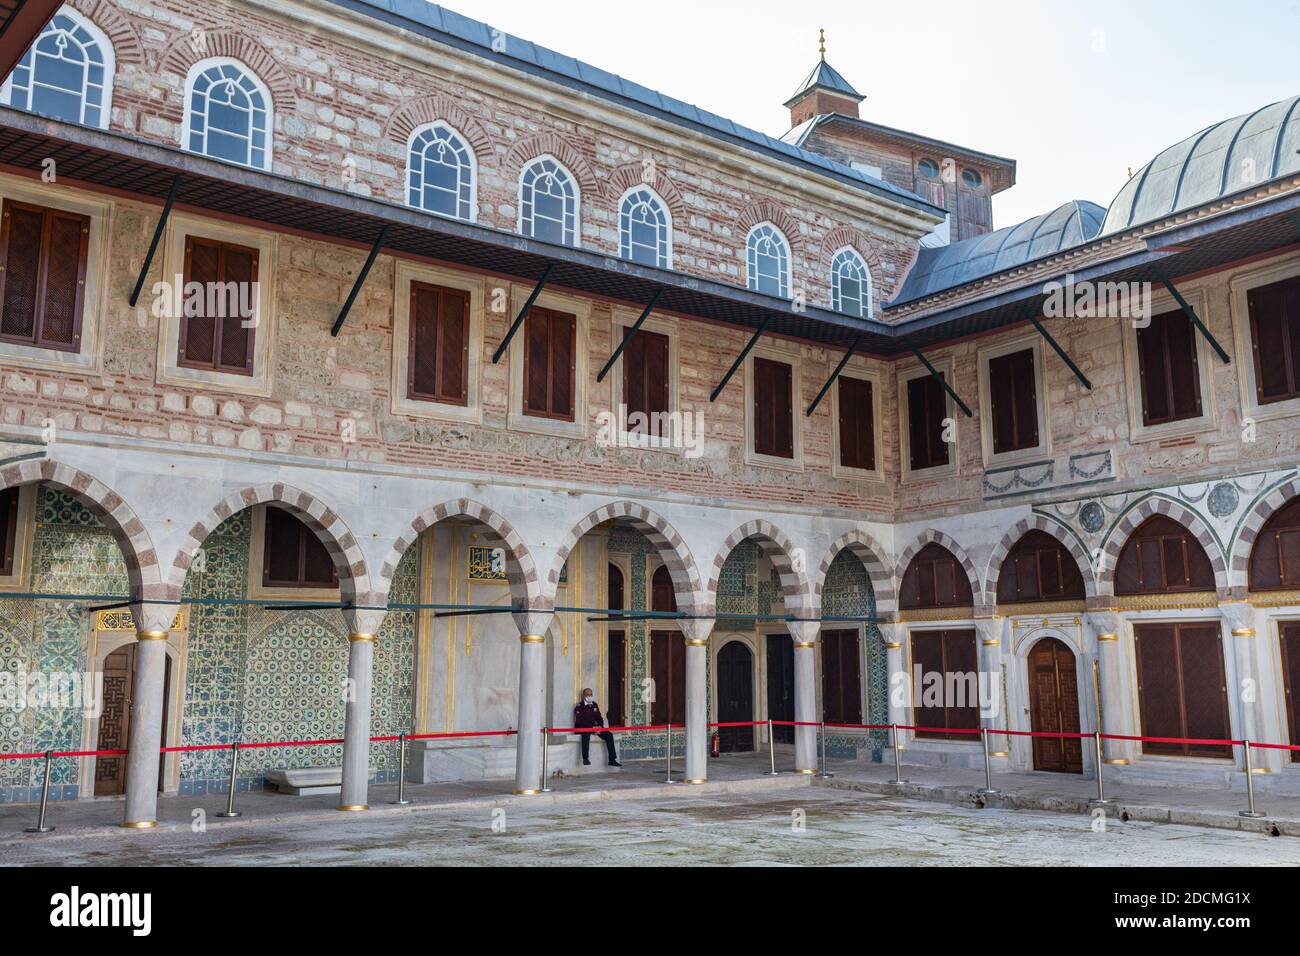 Vista interior de la sección de Harem Imperial en el Palacio Topkapi que es un gran museo en el este del distrito Fatih de Estambul en Turquía. Foto de stock